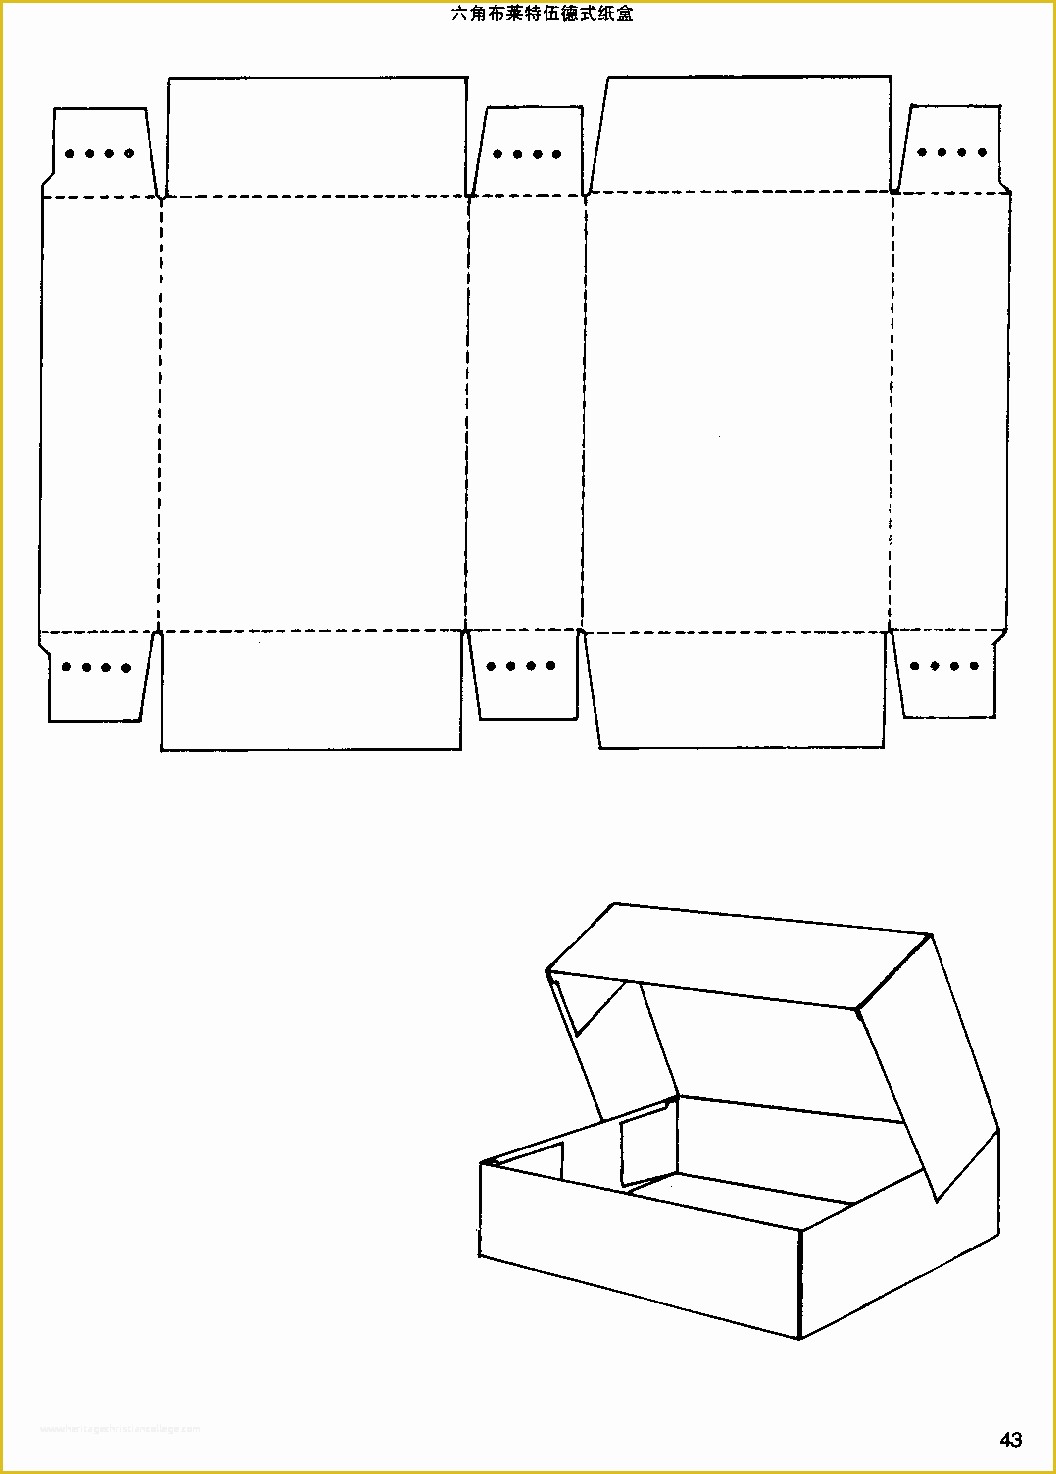 Box Design Templates Free Of Box Structure Design